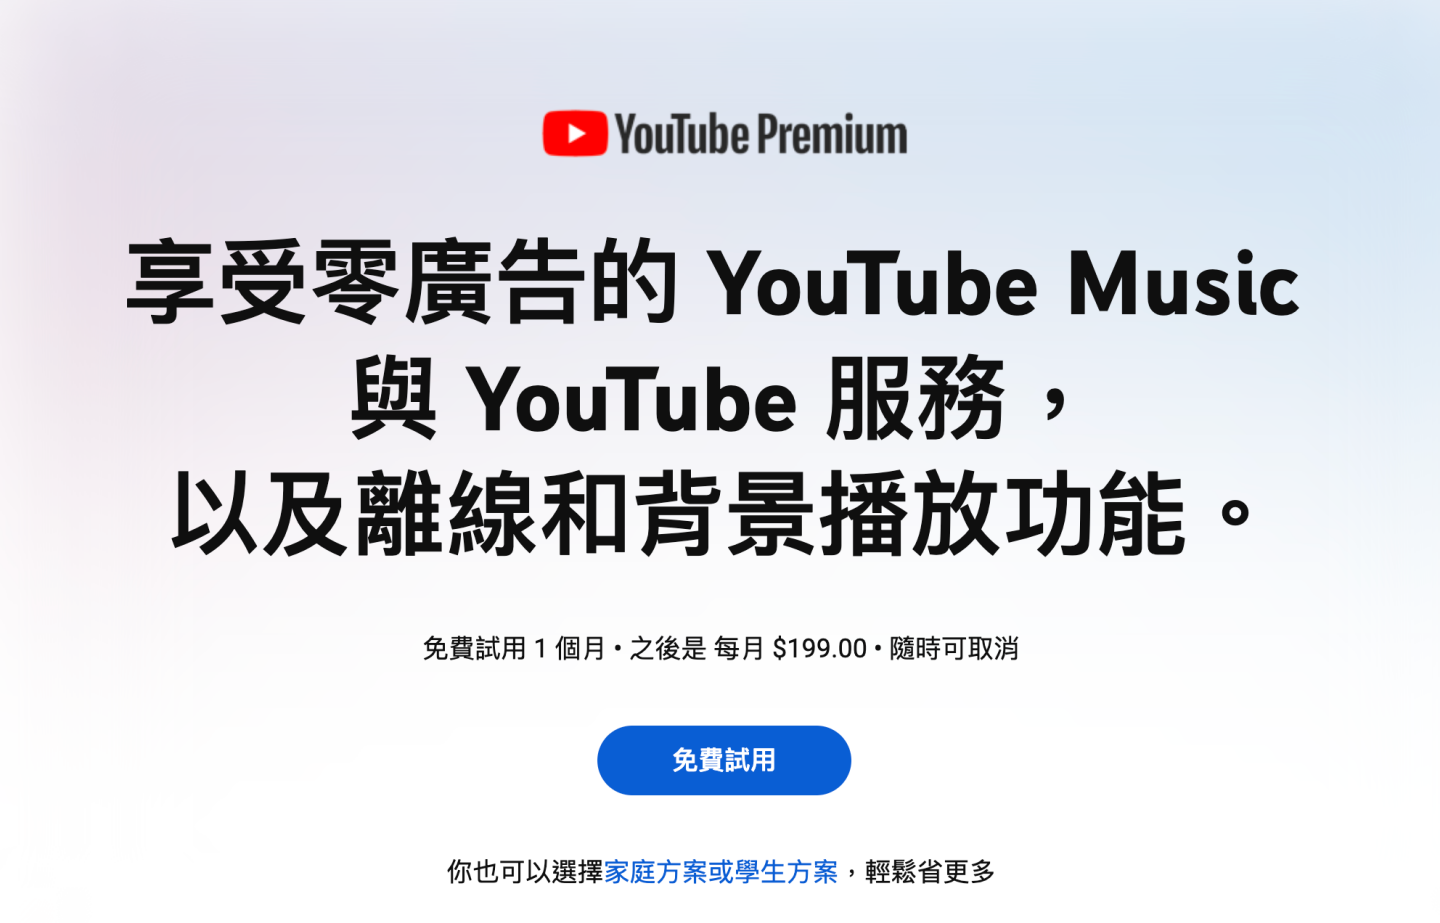 YouTube 持續嚴格禁止『 廣告攔截器 』被抓到可能會使影片無法正常播放